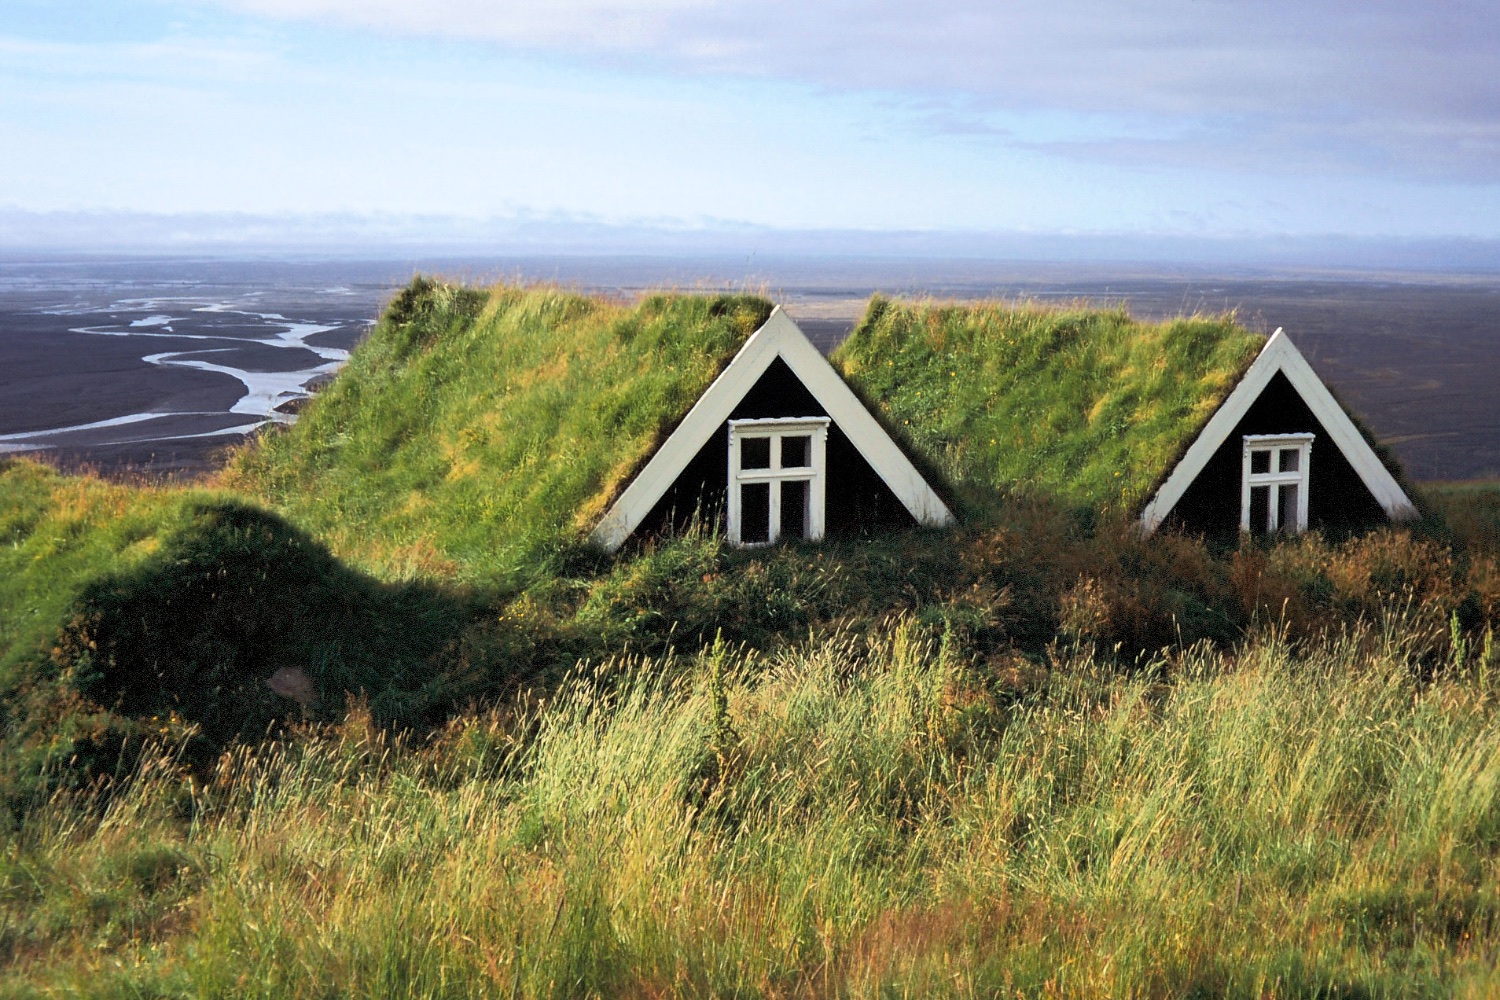  Turf roofed huts near Vatnajökull Glacier 